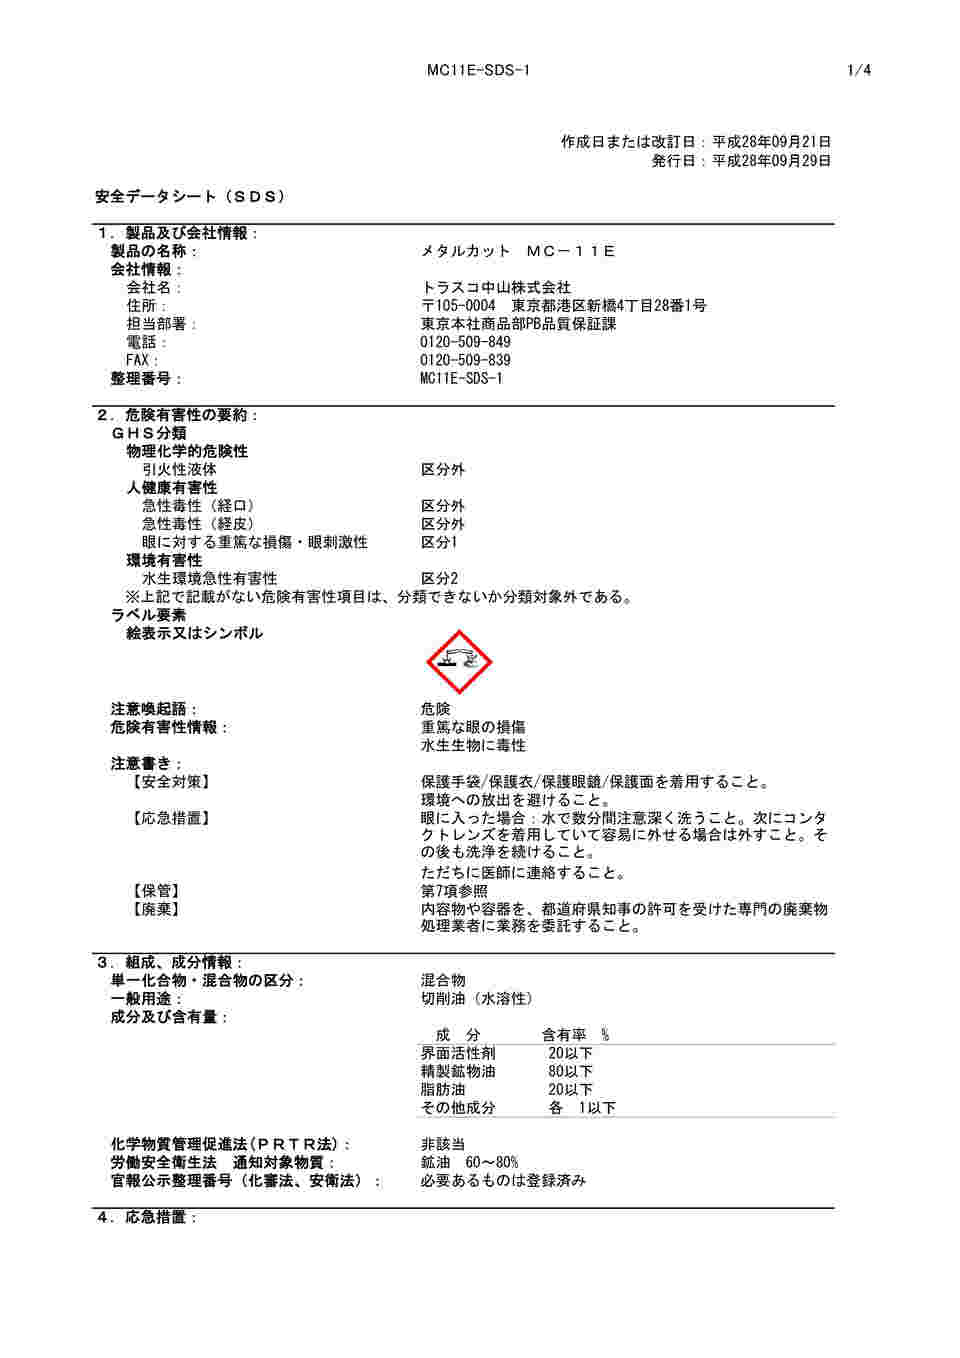 61-2822-89 メタルカット エマルション油脂型 18L MC-11E 【AXEL